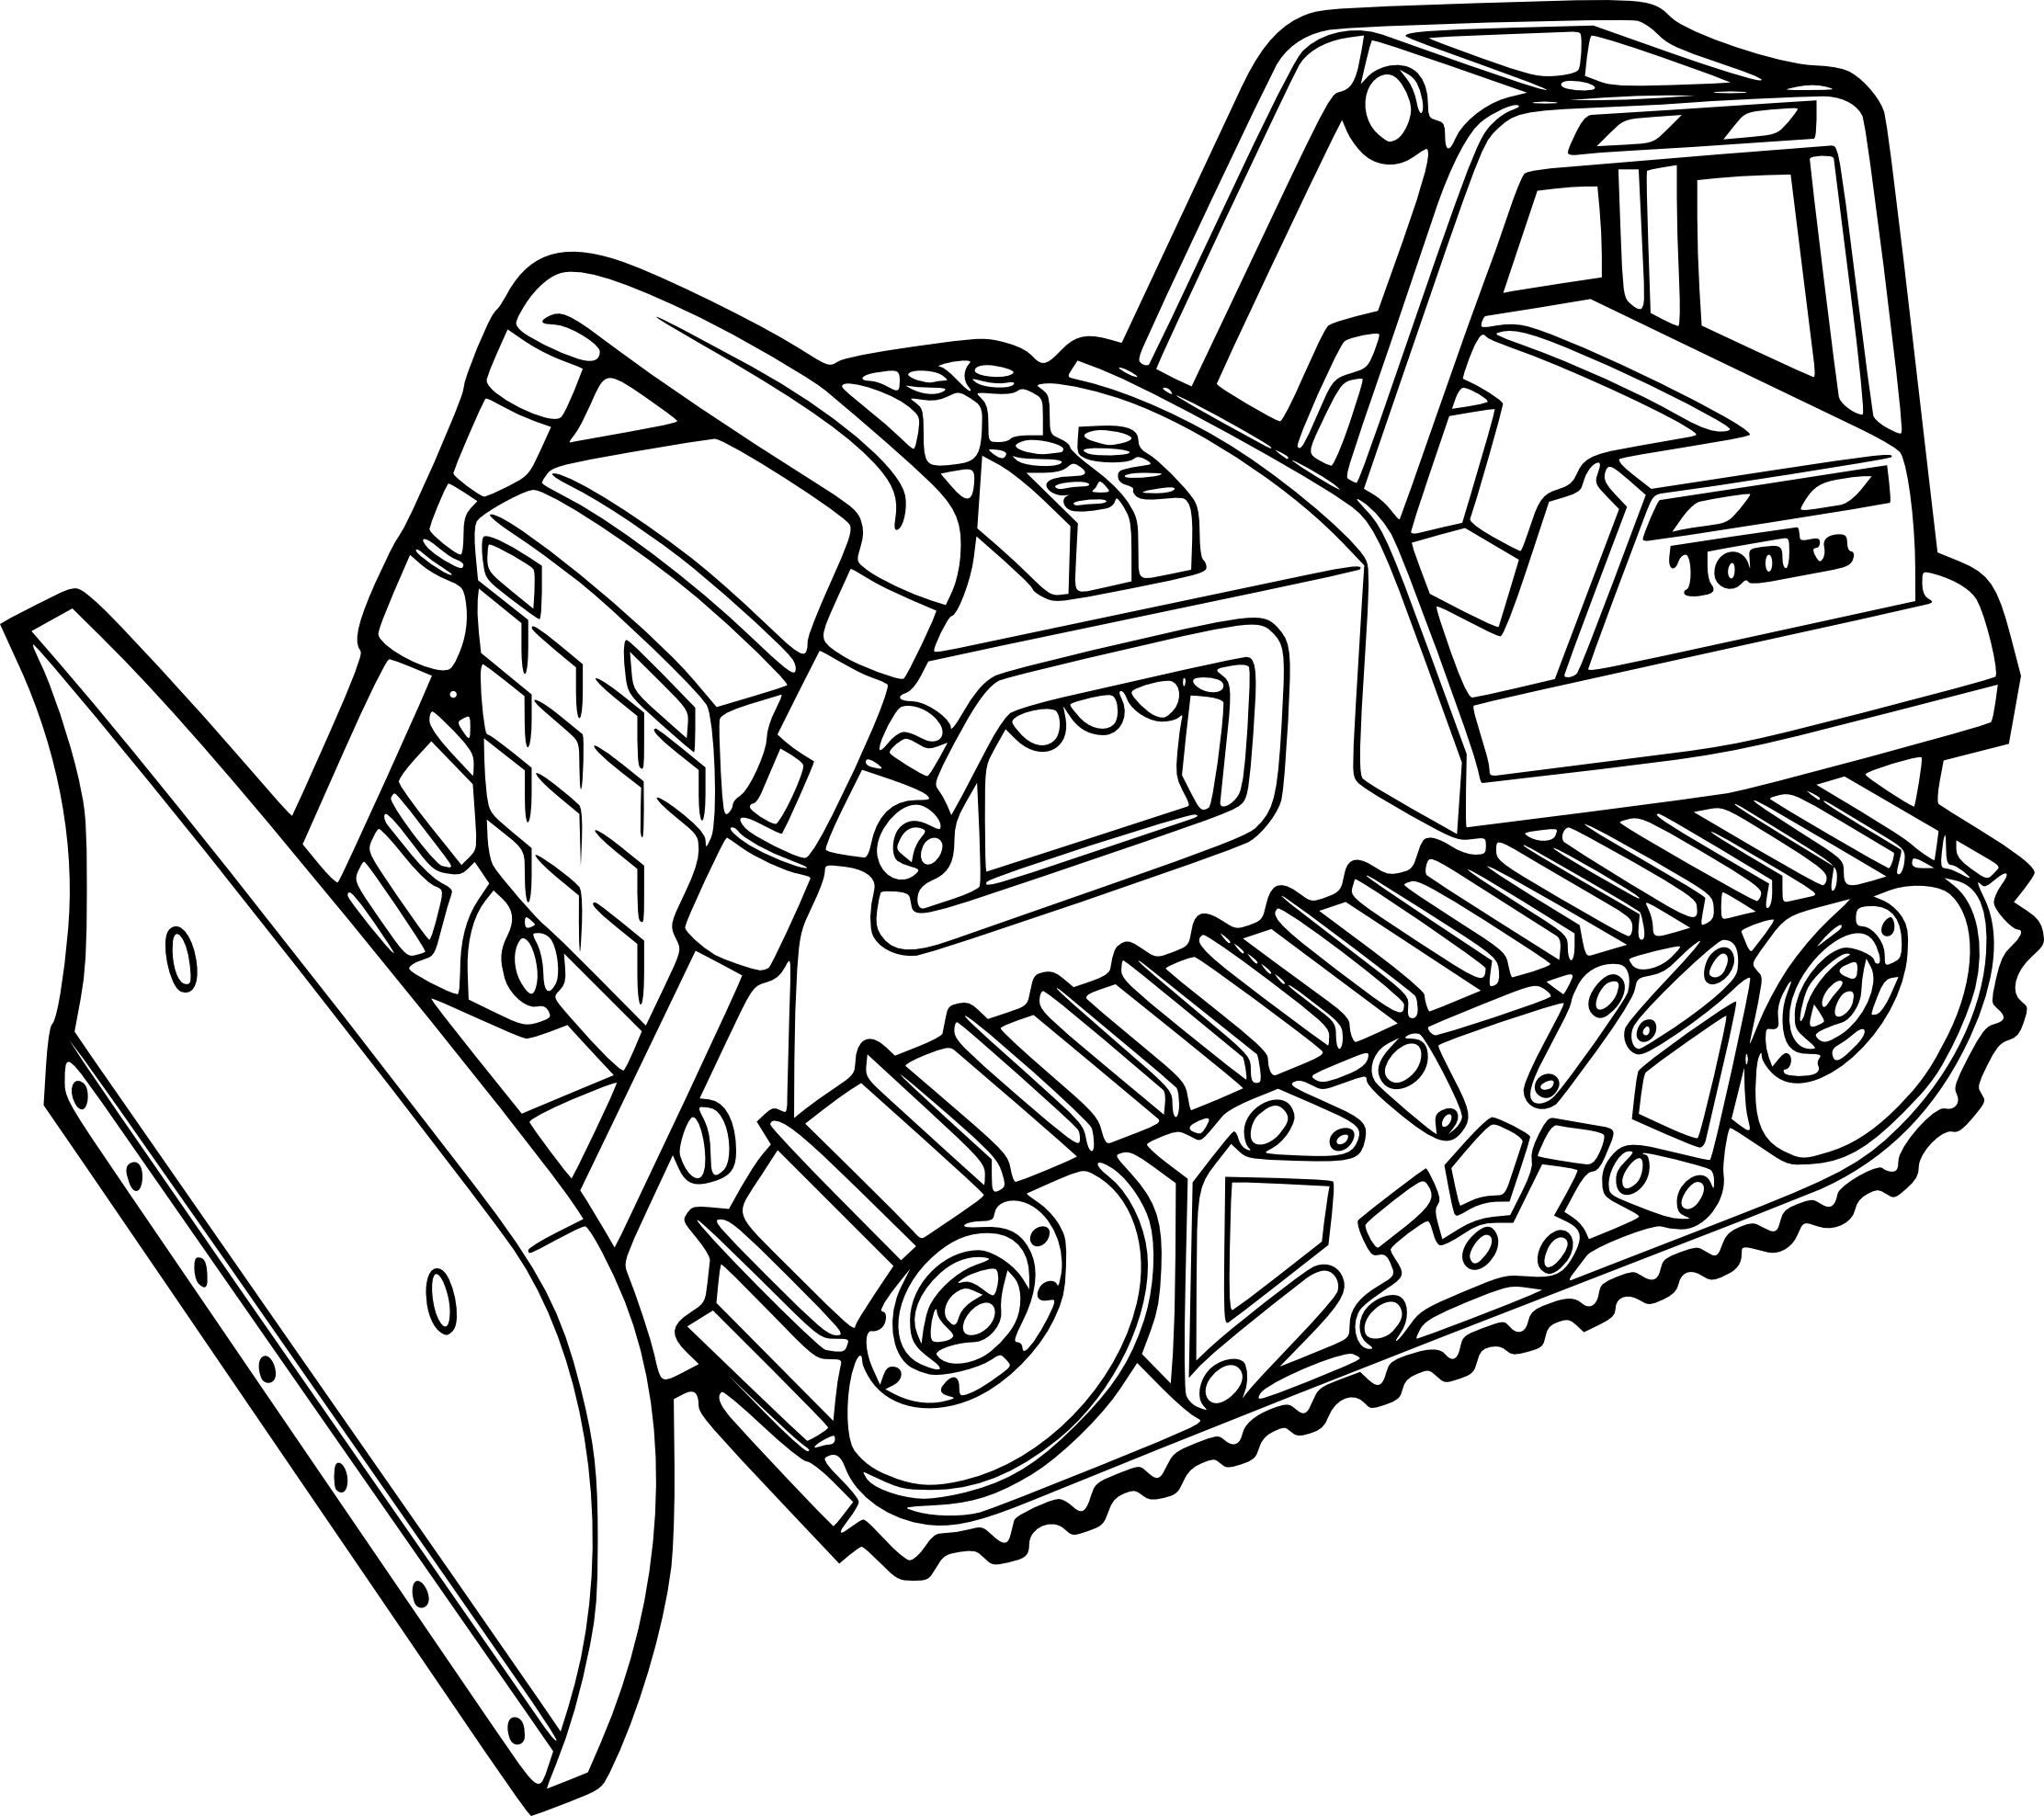 Bulldozer Drawing Images - Free Download on Freepik